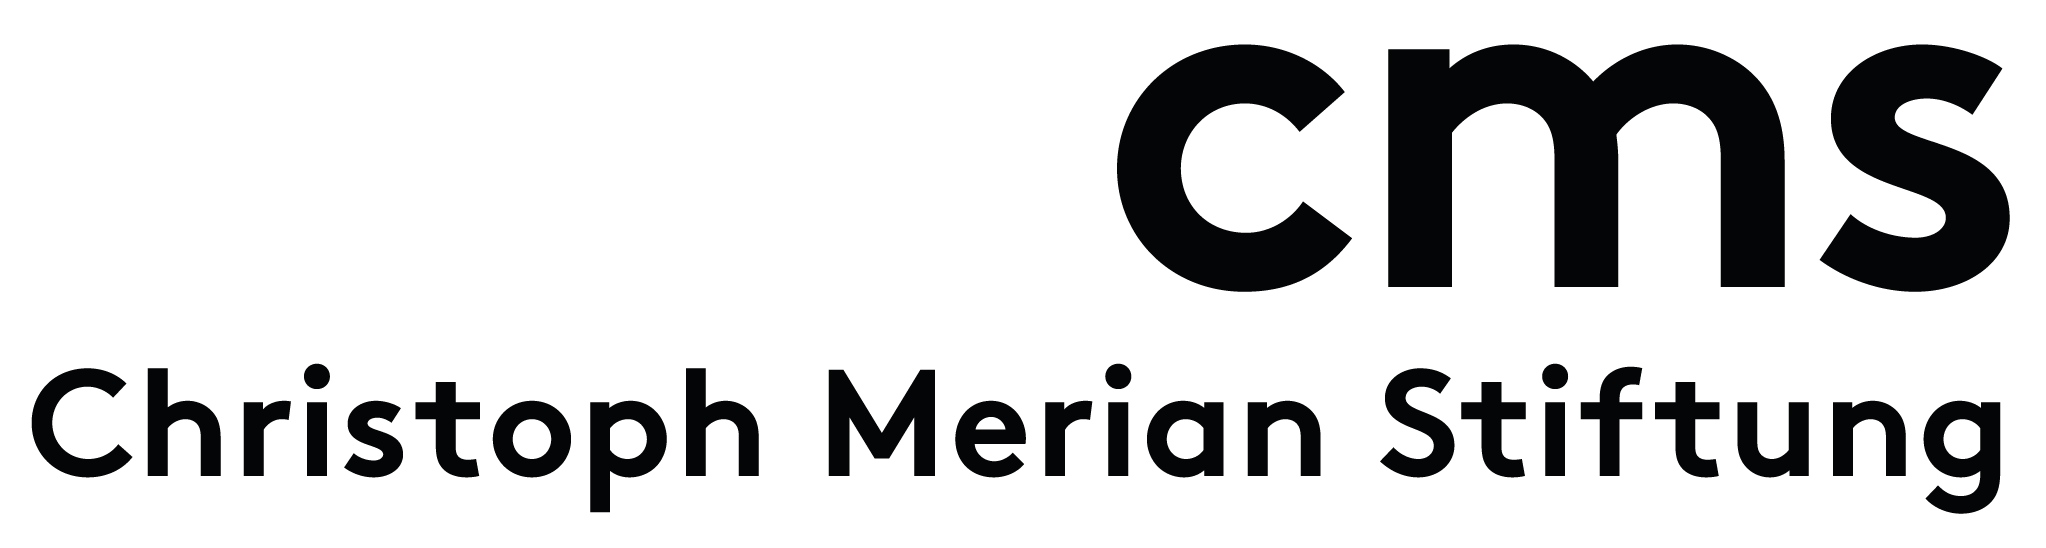 Logo der Christoph merian Stiftung